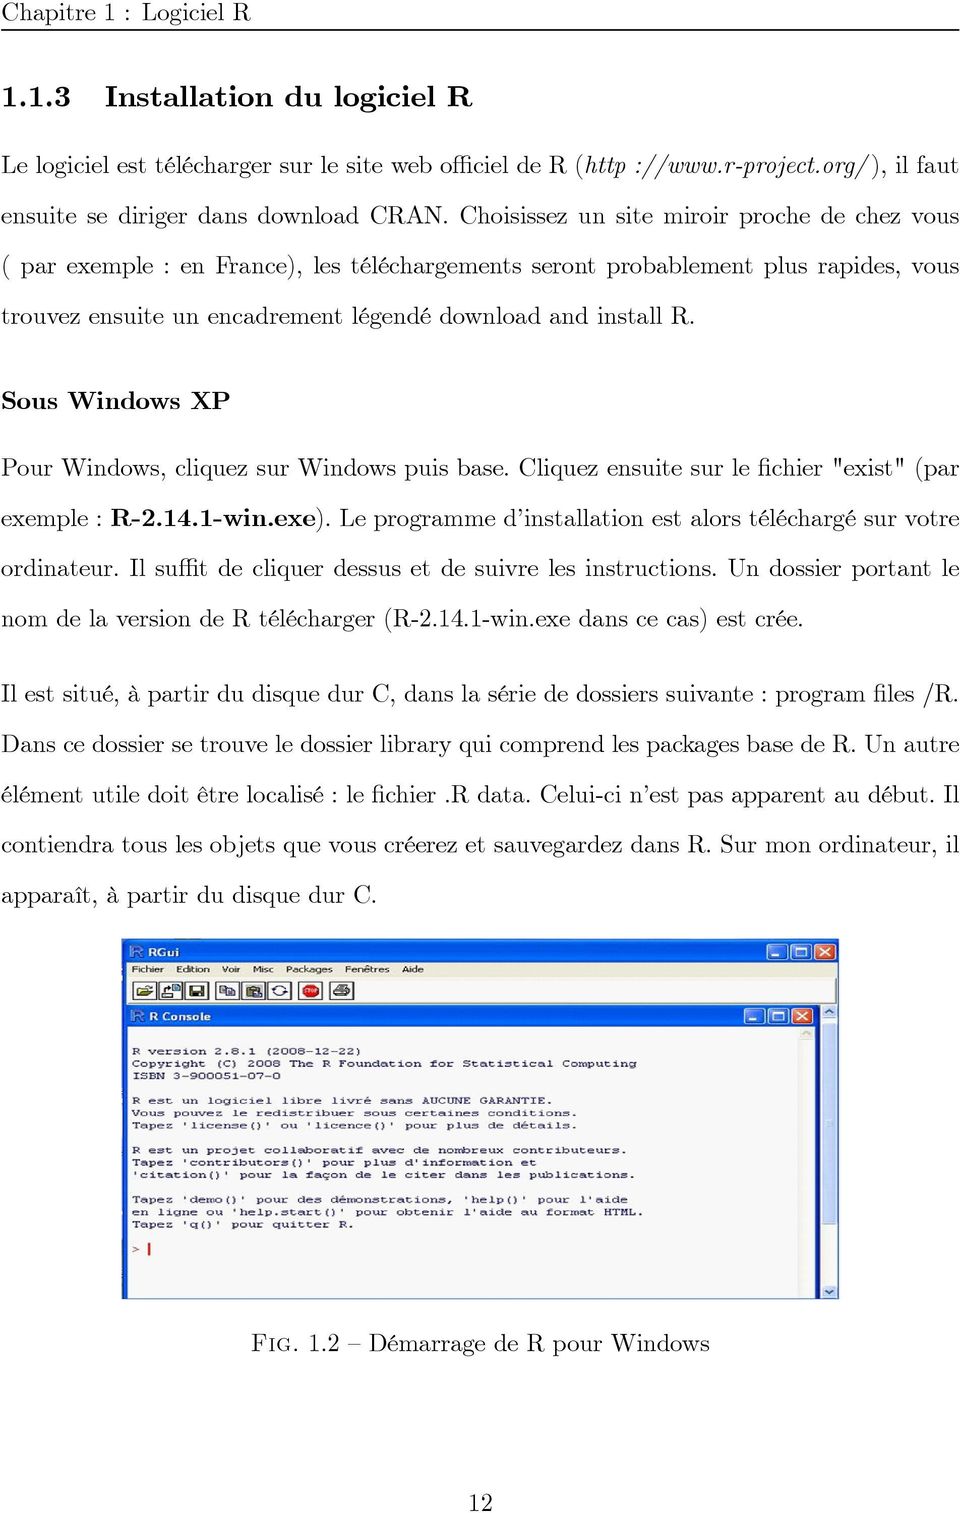 Sous Windows XP Pour Windows, cliquez sur Windows puis base. Cliquez ensuite sur le chier "exist" (par exemple : R-2.14.1-win.exe).